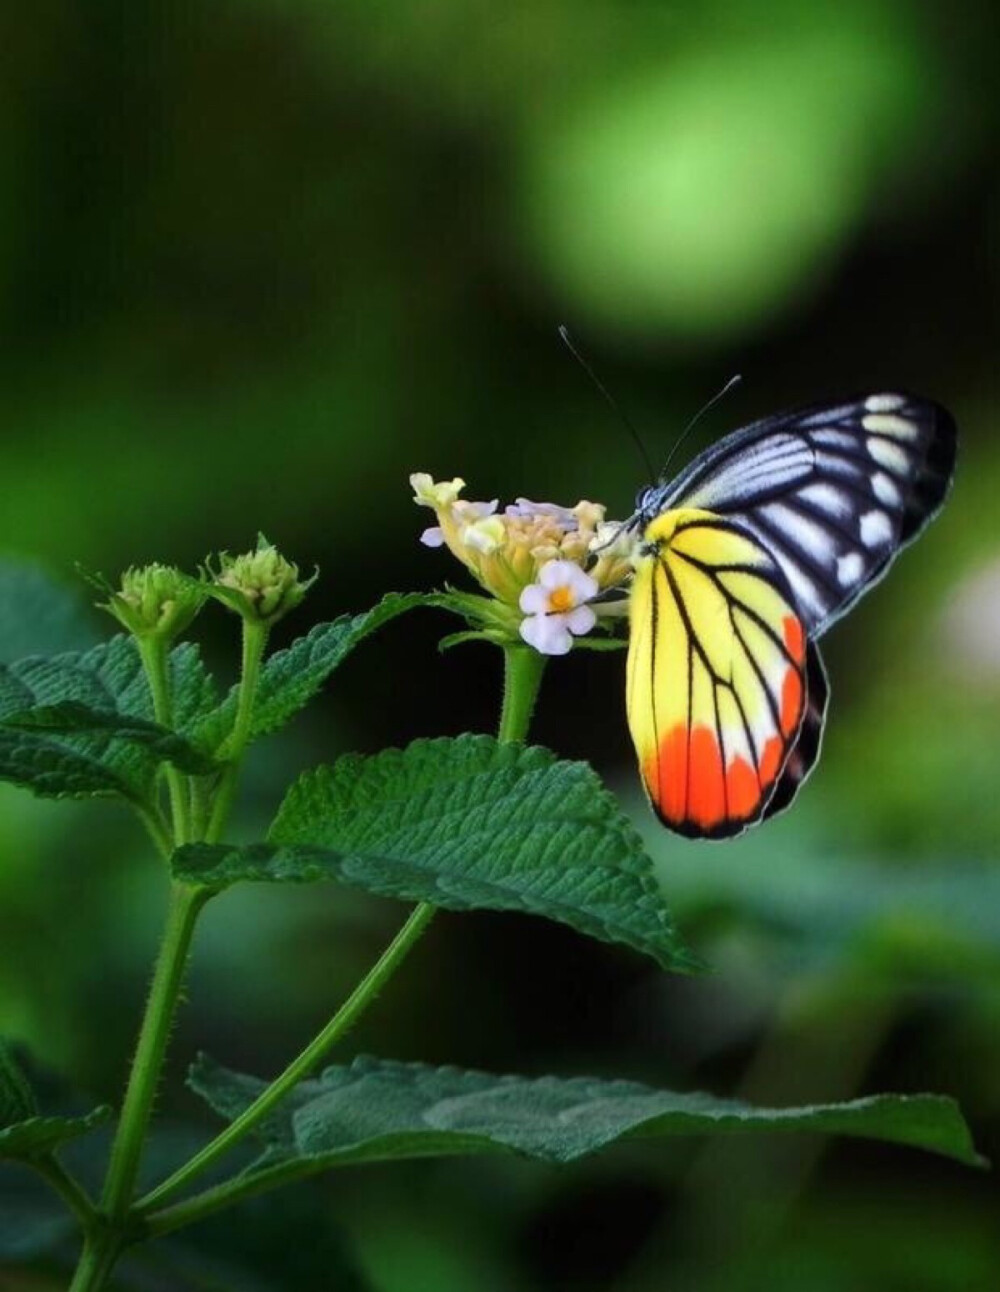 红肩粉蝶的颜色极为鲜艳,在粉蝶世界中,甚为少见,目前仅在云南的南部